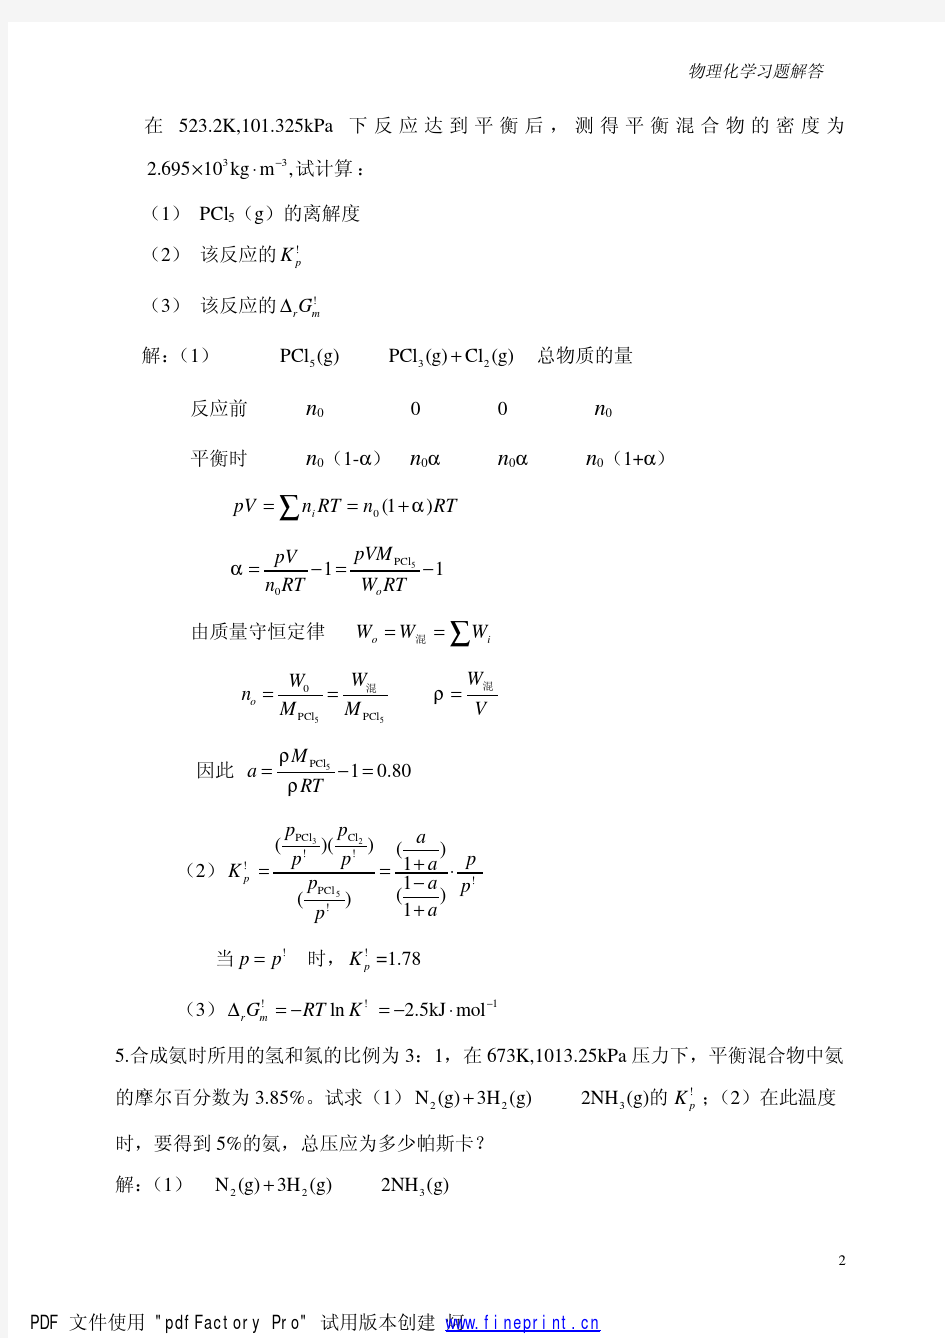 物理化学中国石油大学课后习题答案第6章